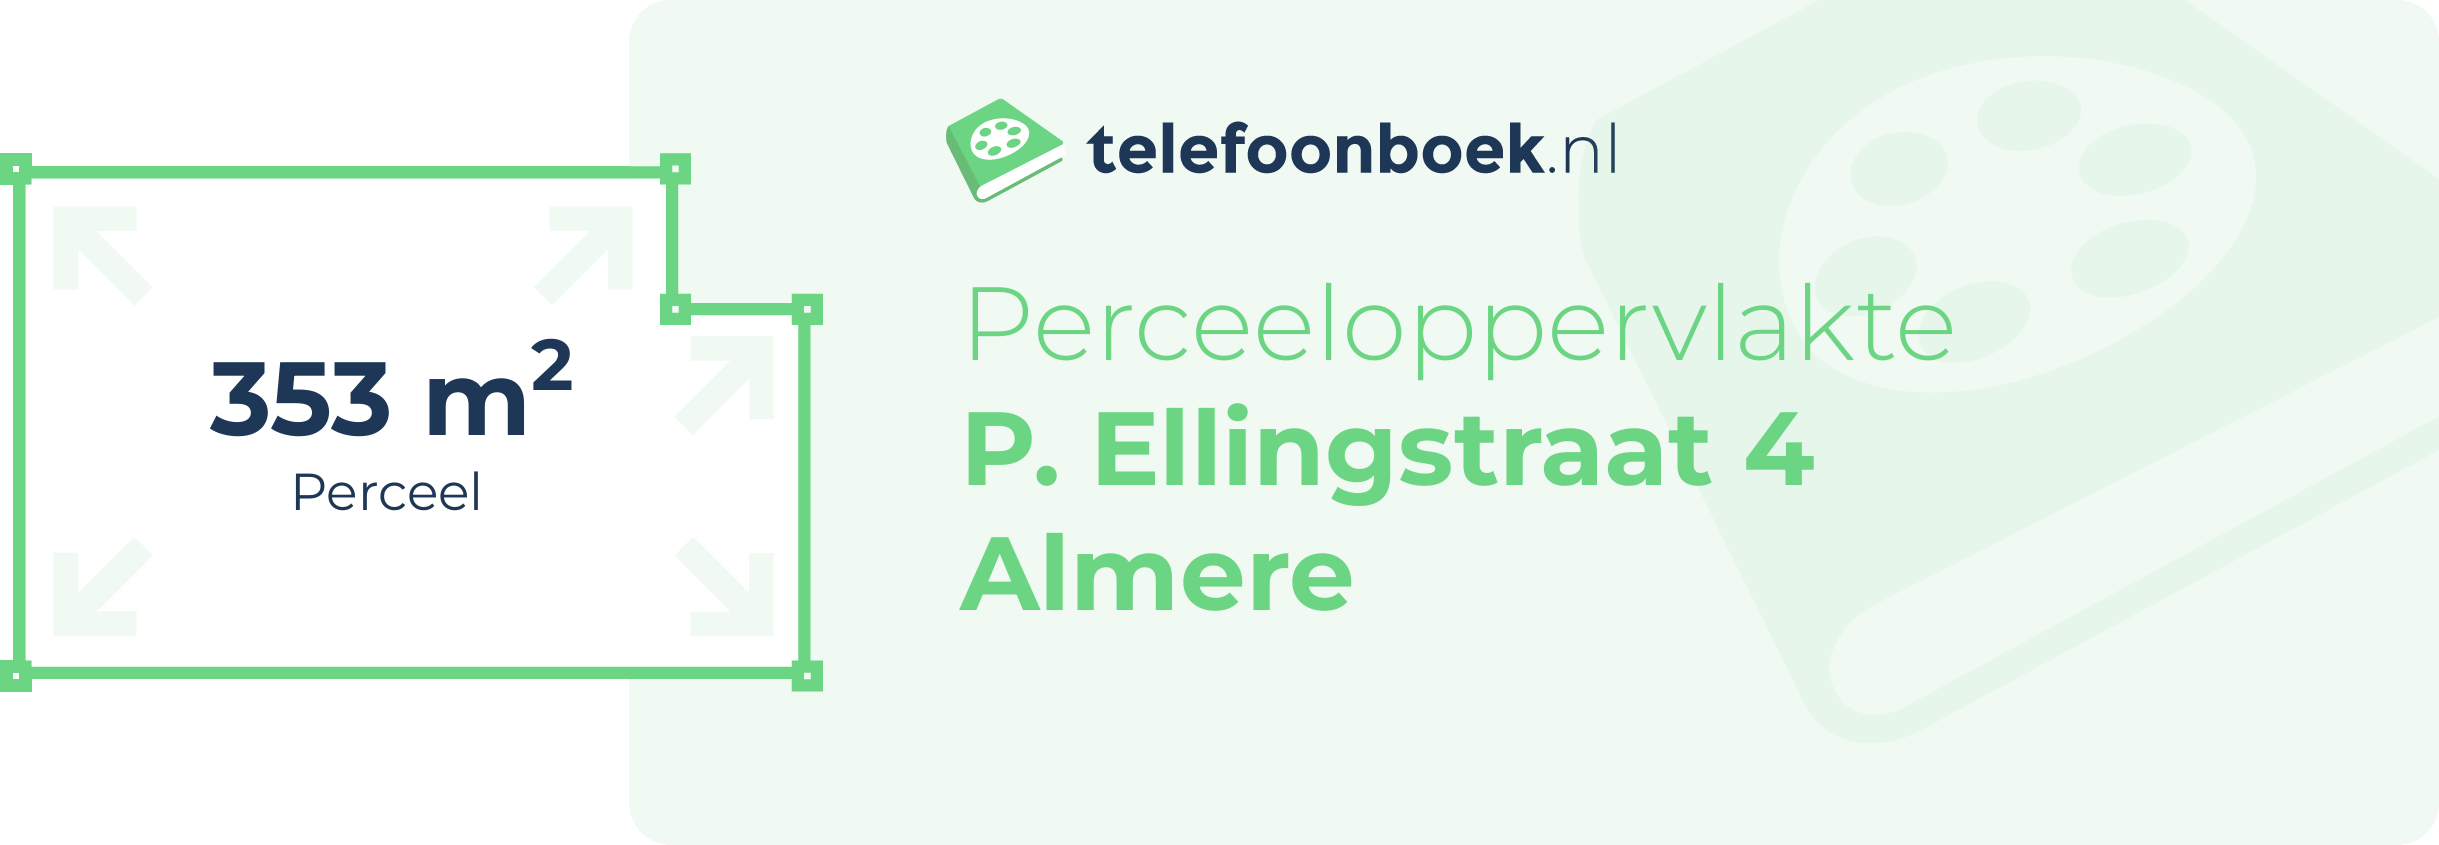 Perceeloppervlakte P. Ellingstraat 4 Almere